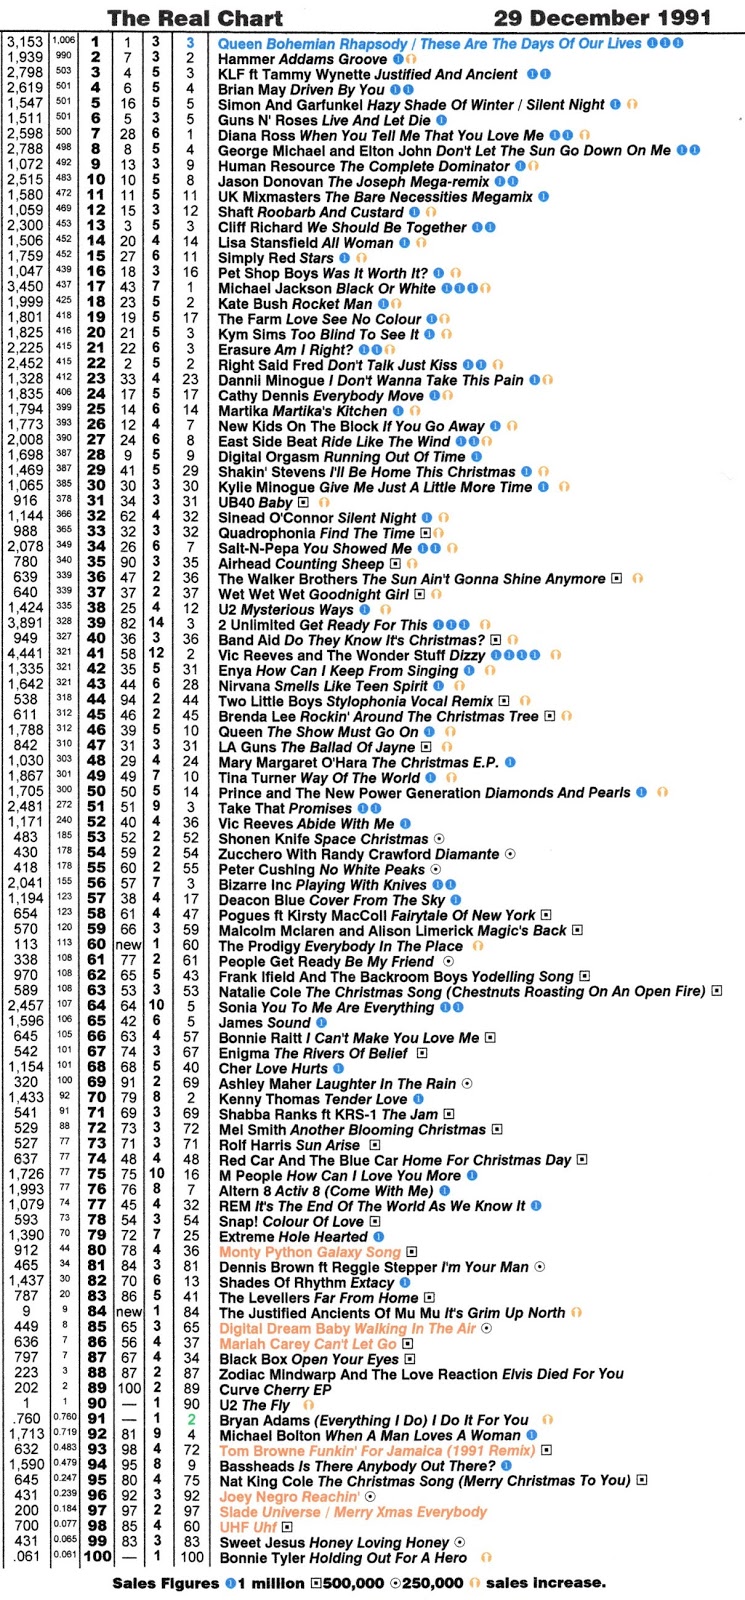 Charts 1991